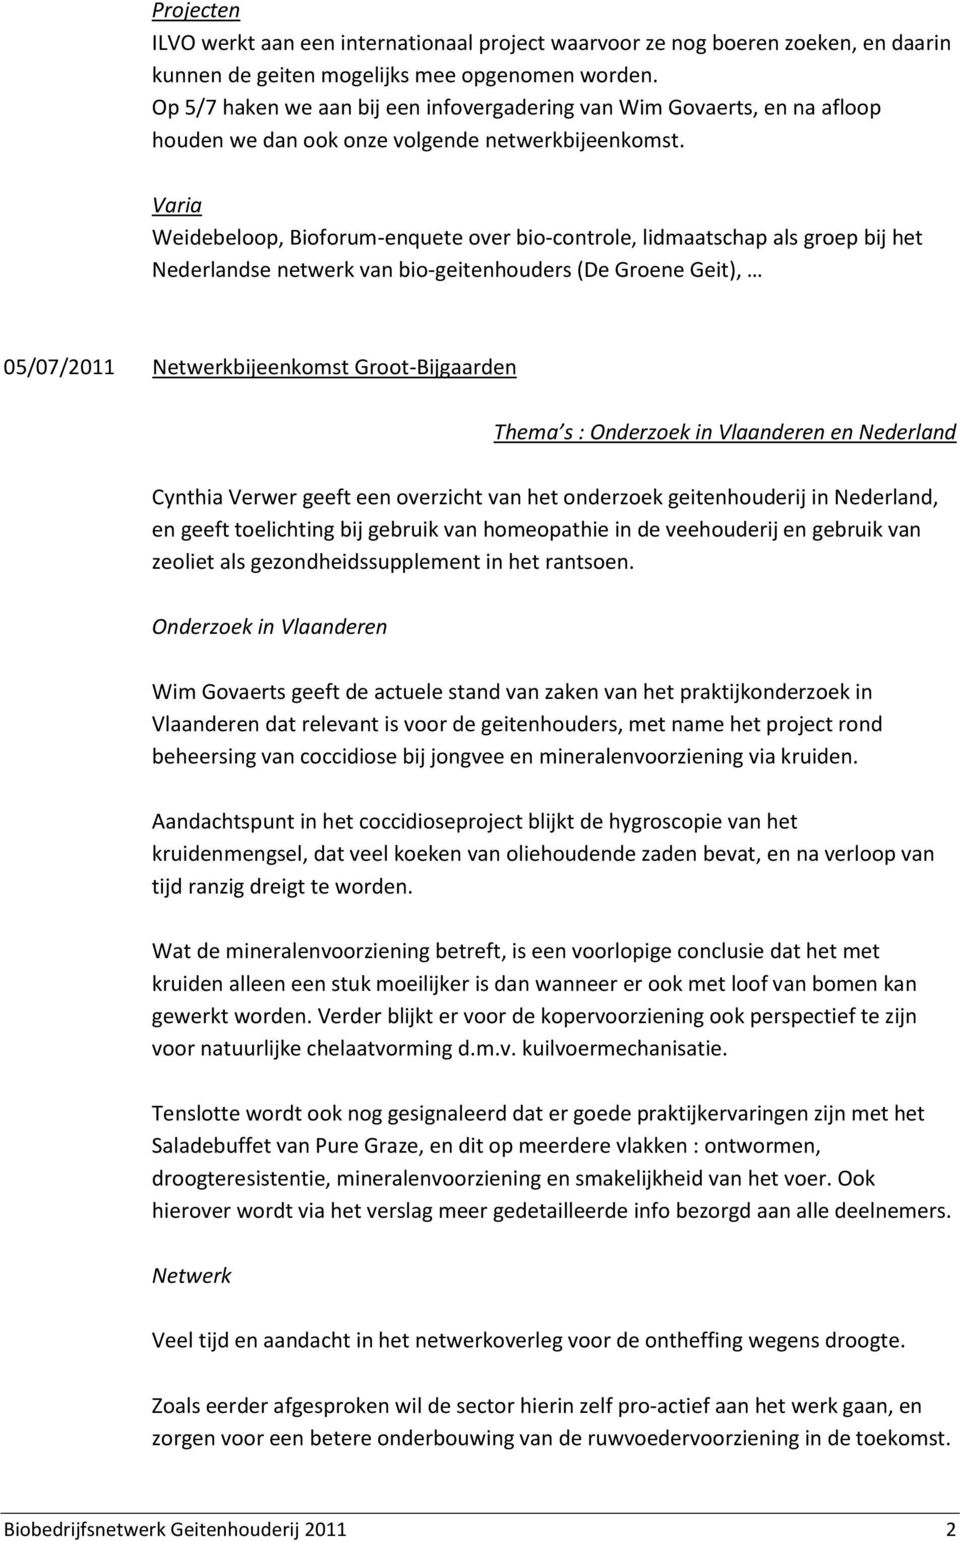 Varia Weidebeloop, Bioforum-enquete over bio-controle, lidmaatschap als groep bij het Nederlandse netwerk van bio-geitenhouders (De Groene Geit), 05/07/2011 Netwerkbijeenkomst Groot-Bijgaarden Thema